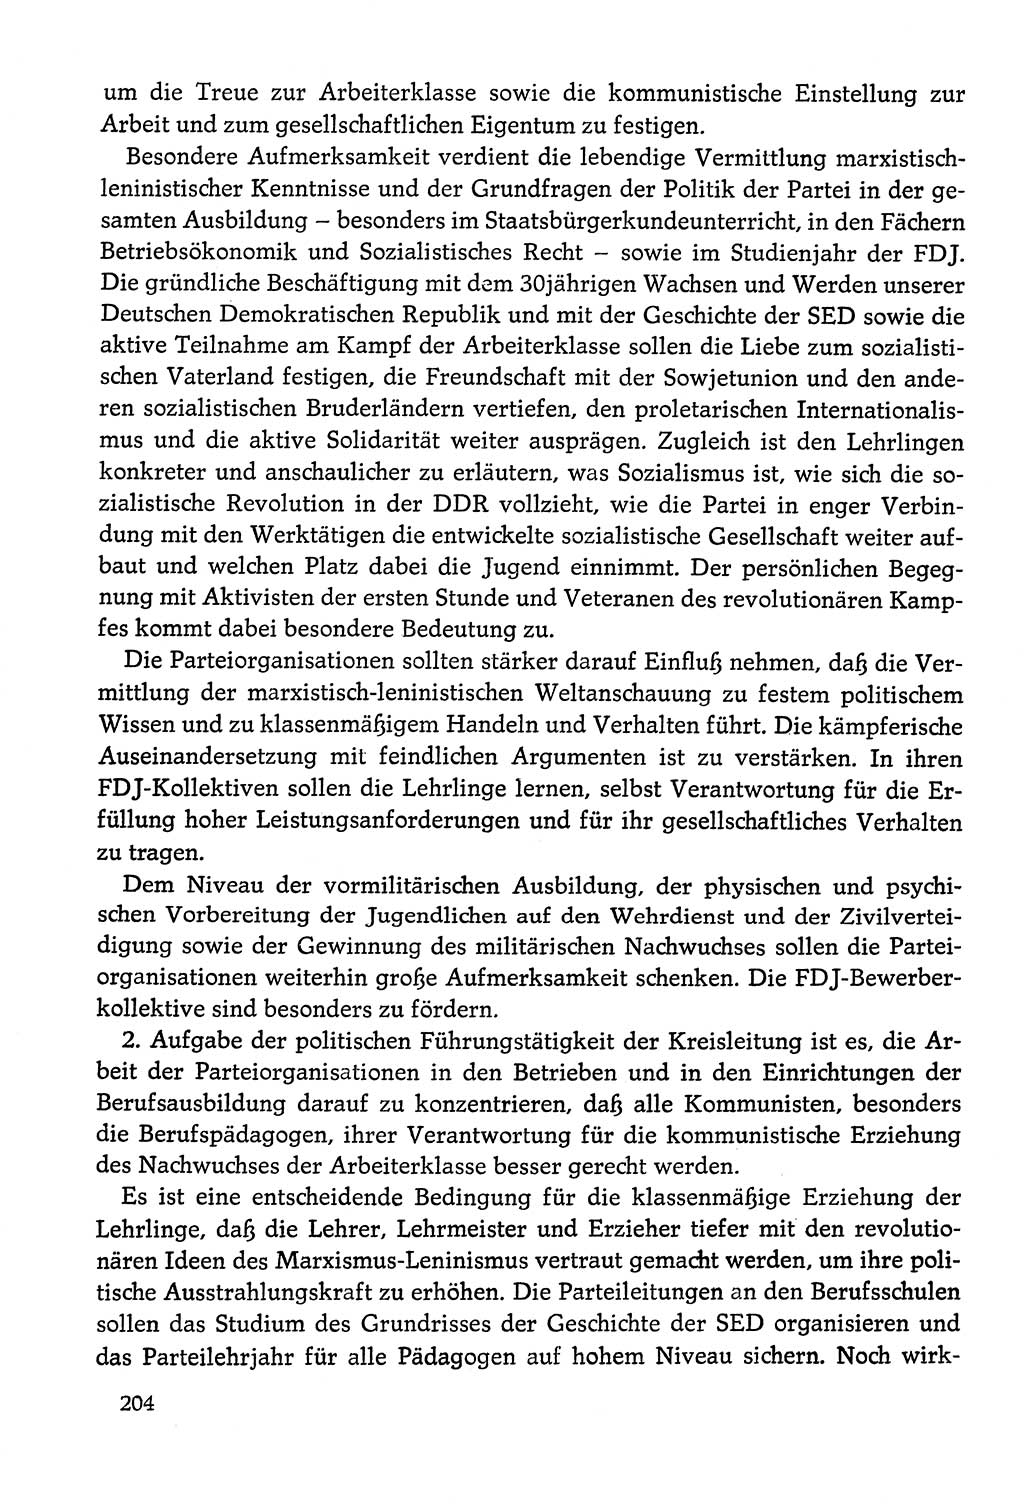 Dokumente der Sozialistischen Einheitspartei Deutschlands (SED) [Deutsche Demokratische Republik (DDR)] 1978-1979, Seite 204 (Dok. SED DDR 1978-1979, S. 204)